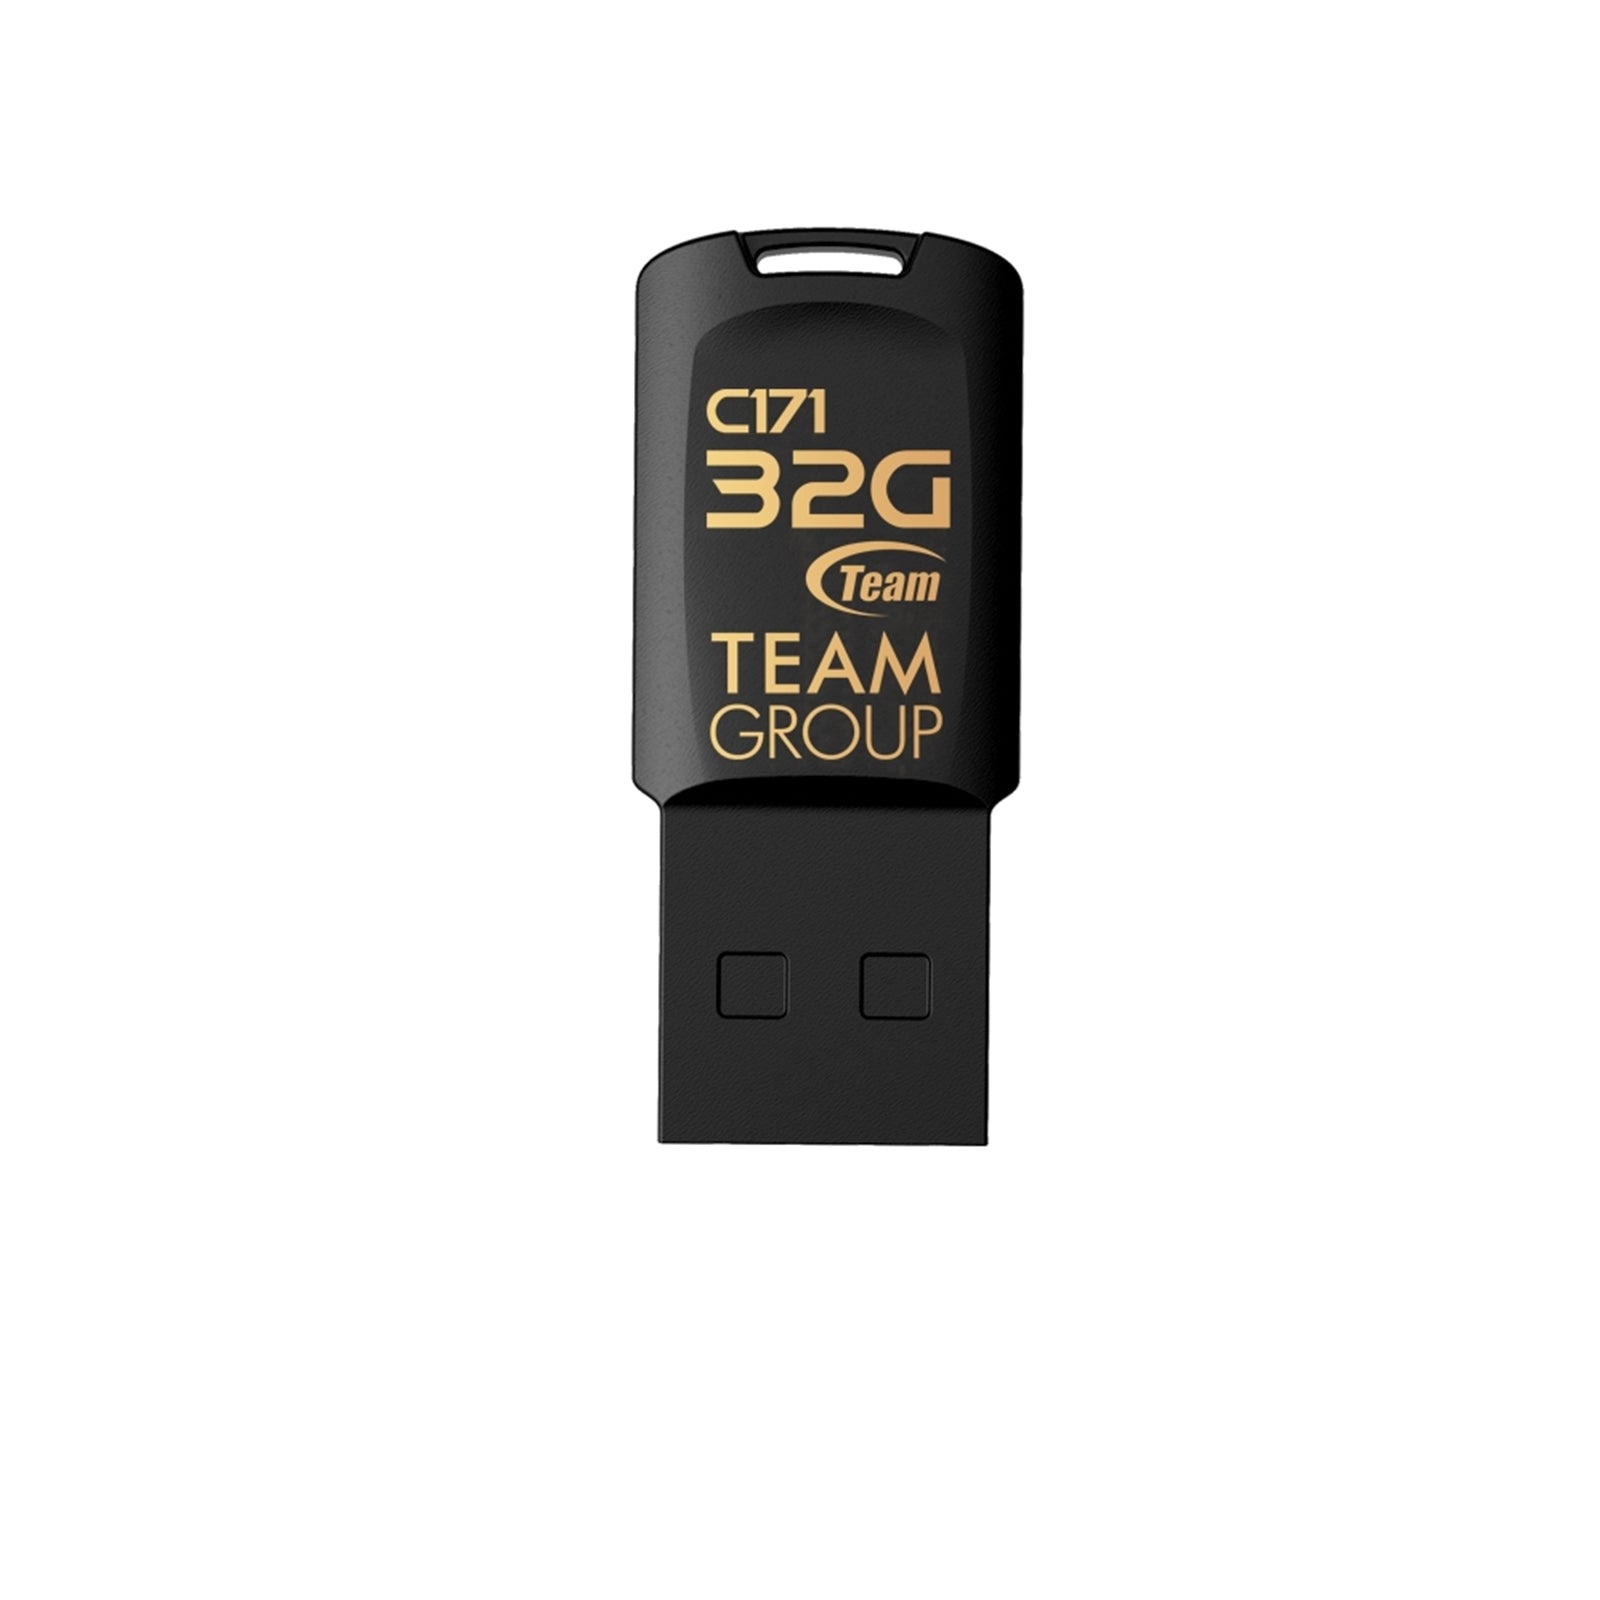 Team C171 32GB USB 2.0 Black USB Flash Drive memory stick